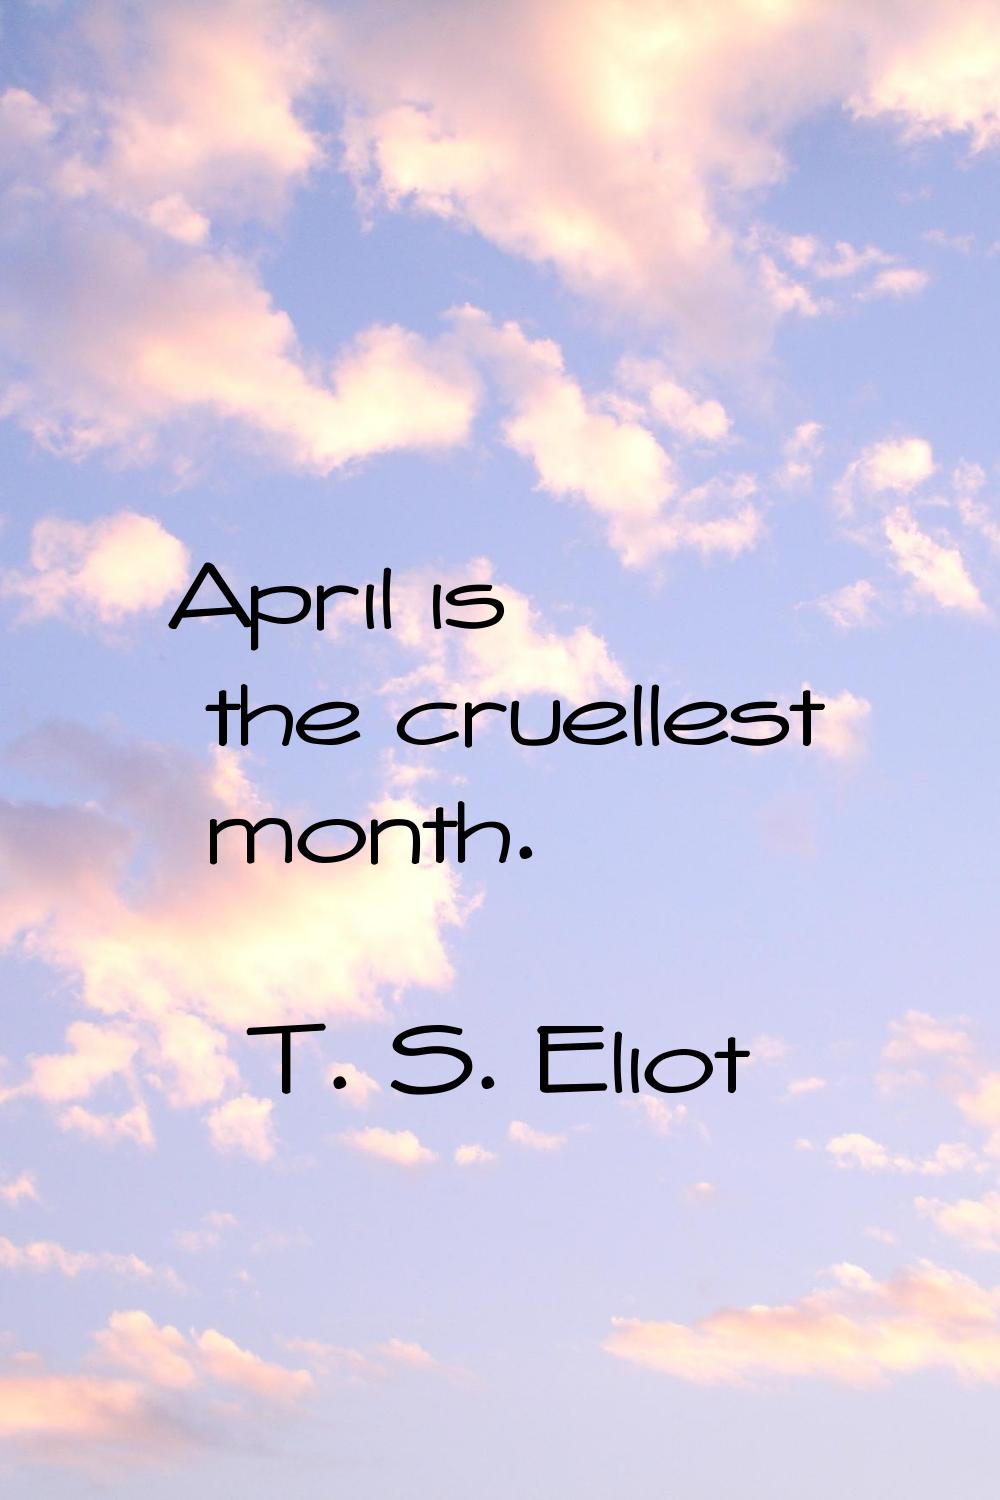 April is the cruellest month.